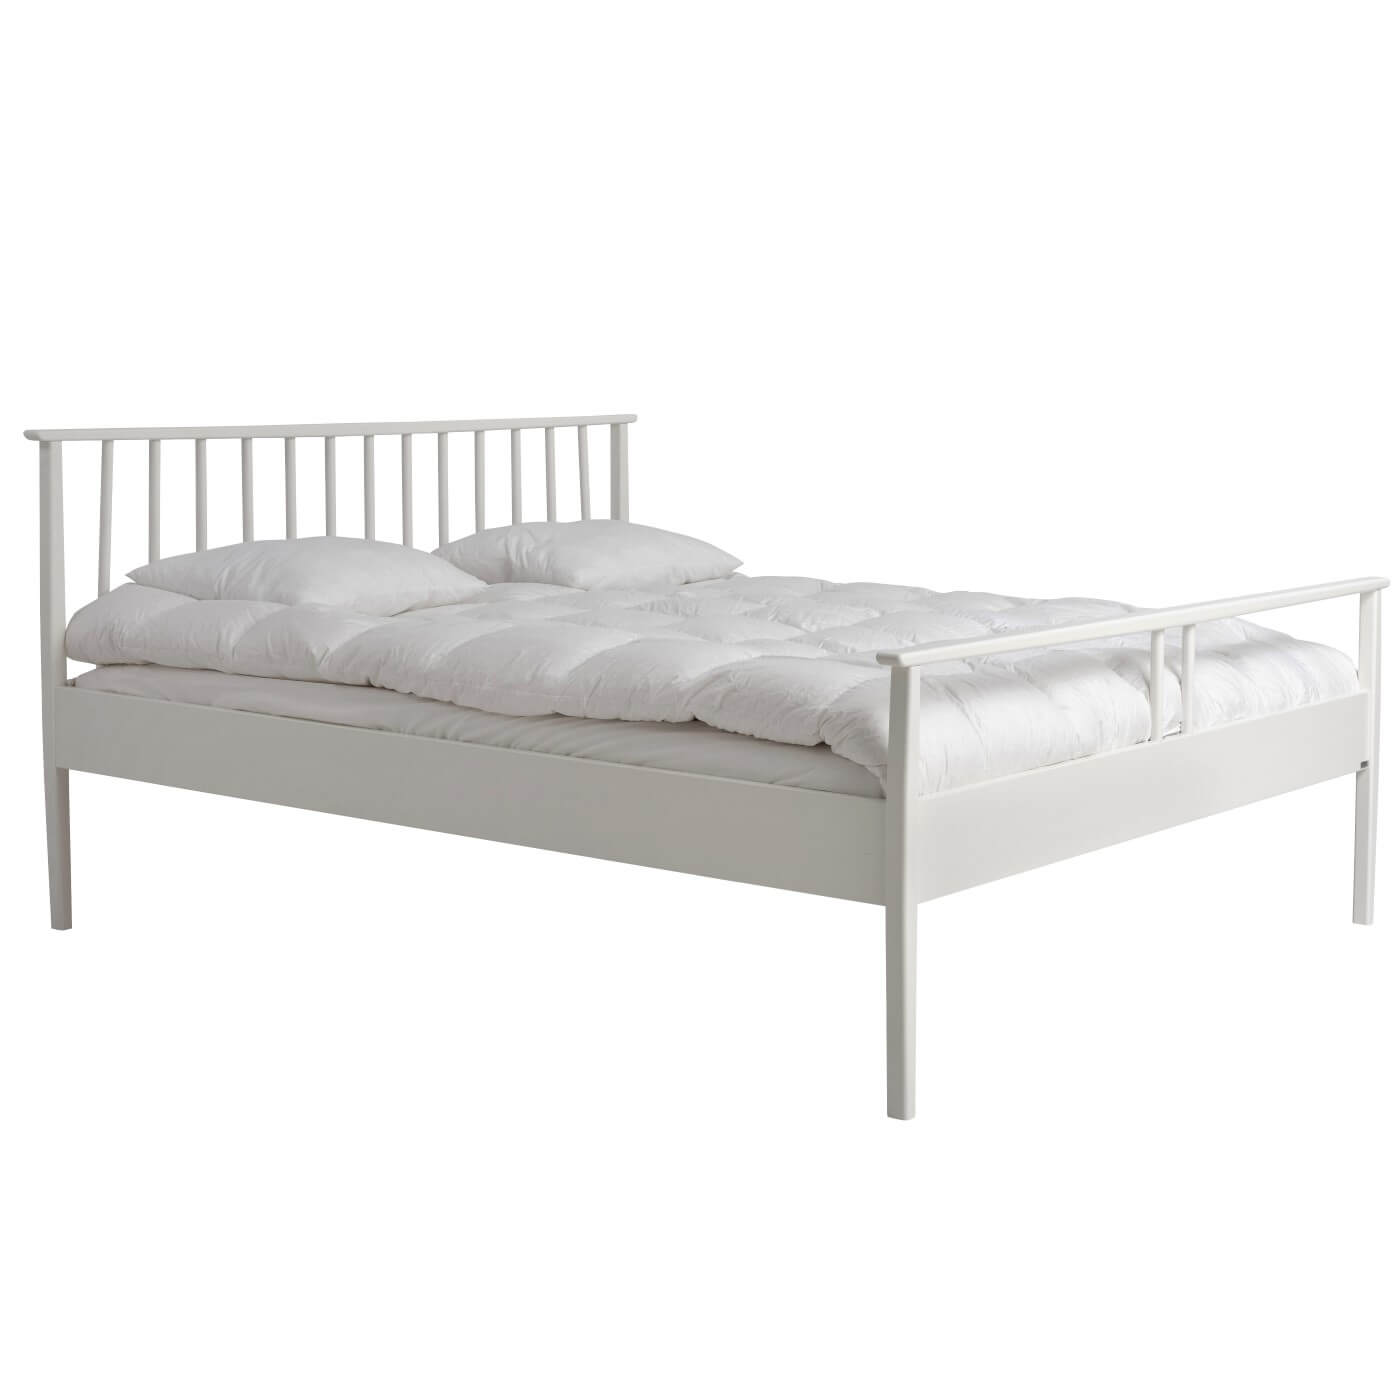 Białe łóżko drewniane nowoczesne NOEL. Widoczne w całości łóżko drewniane 160x200. Na łóżku z pięknym białym ażurowym szczytem z drewna leżąca biała kołdra i 2 poduszki. Skandynawski design